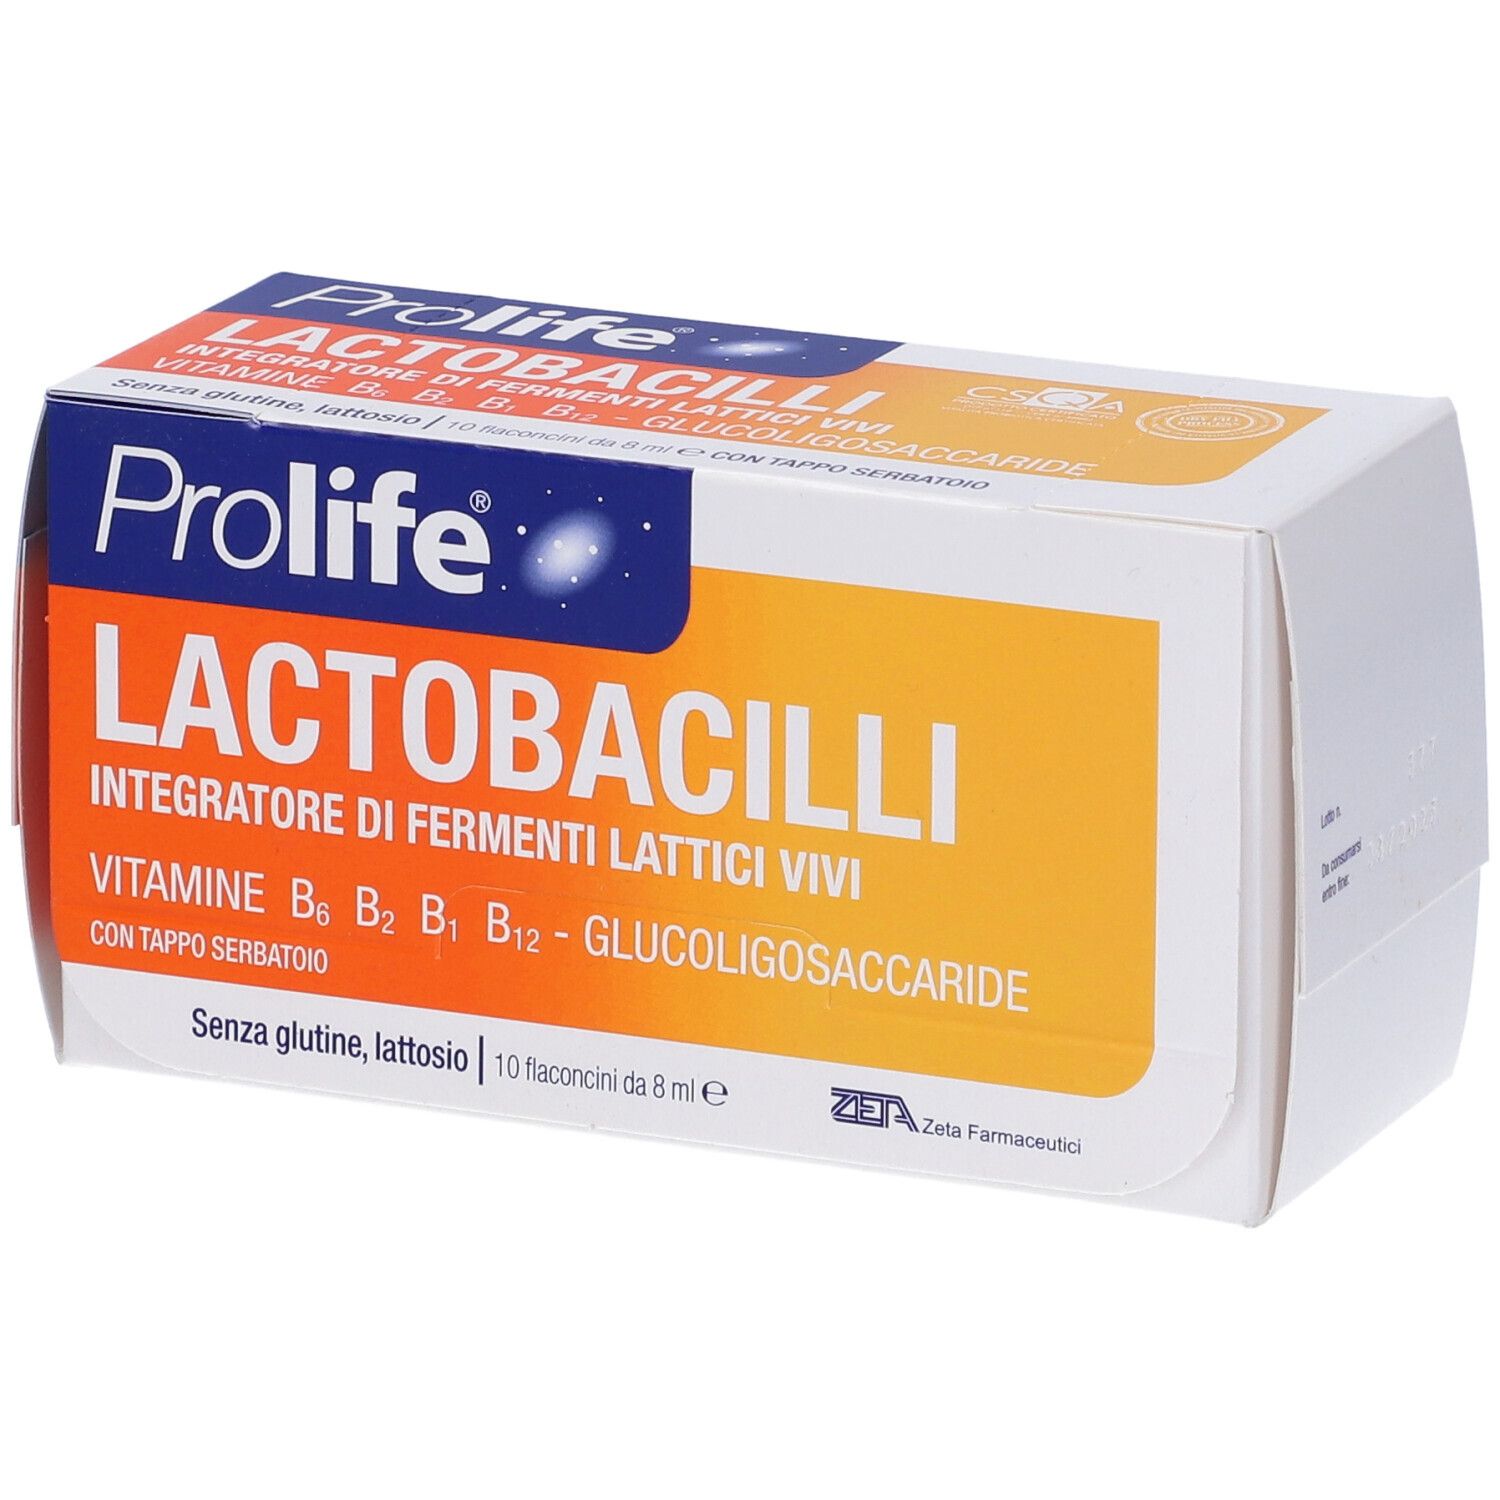 Prolife® Lactobaccili